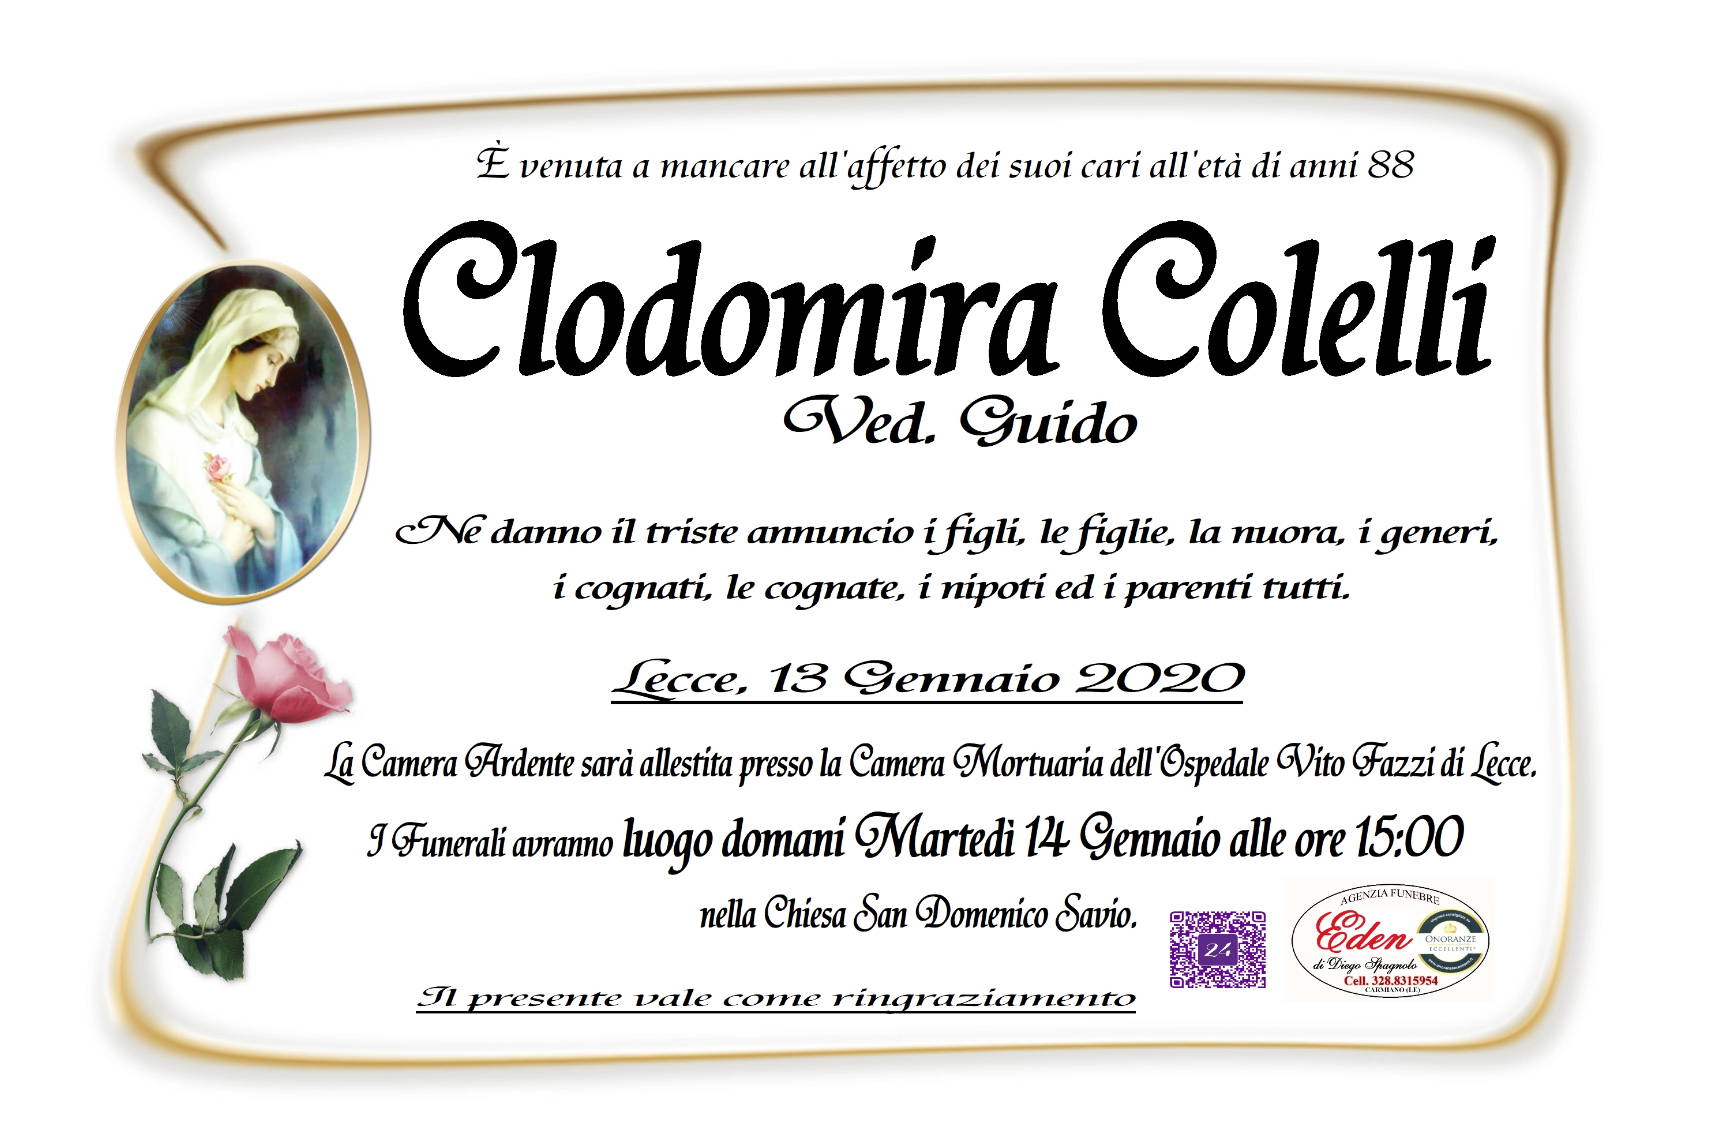 Clodomira Colelli